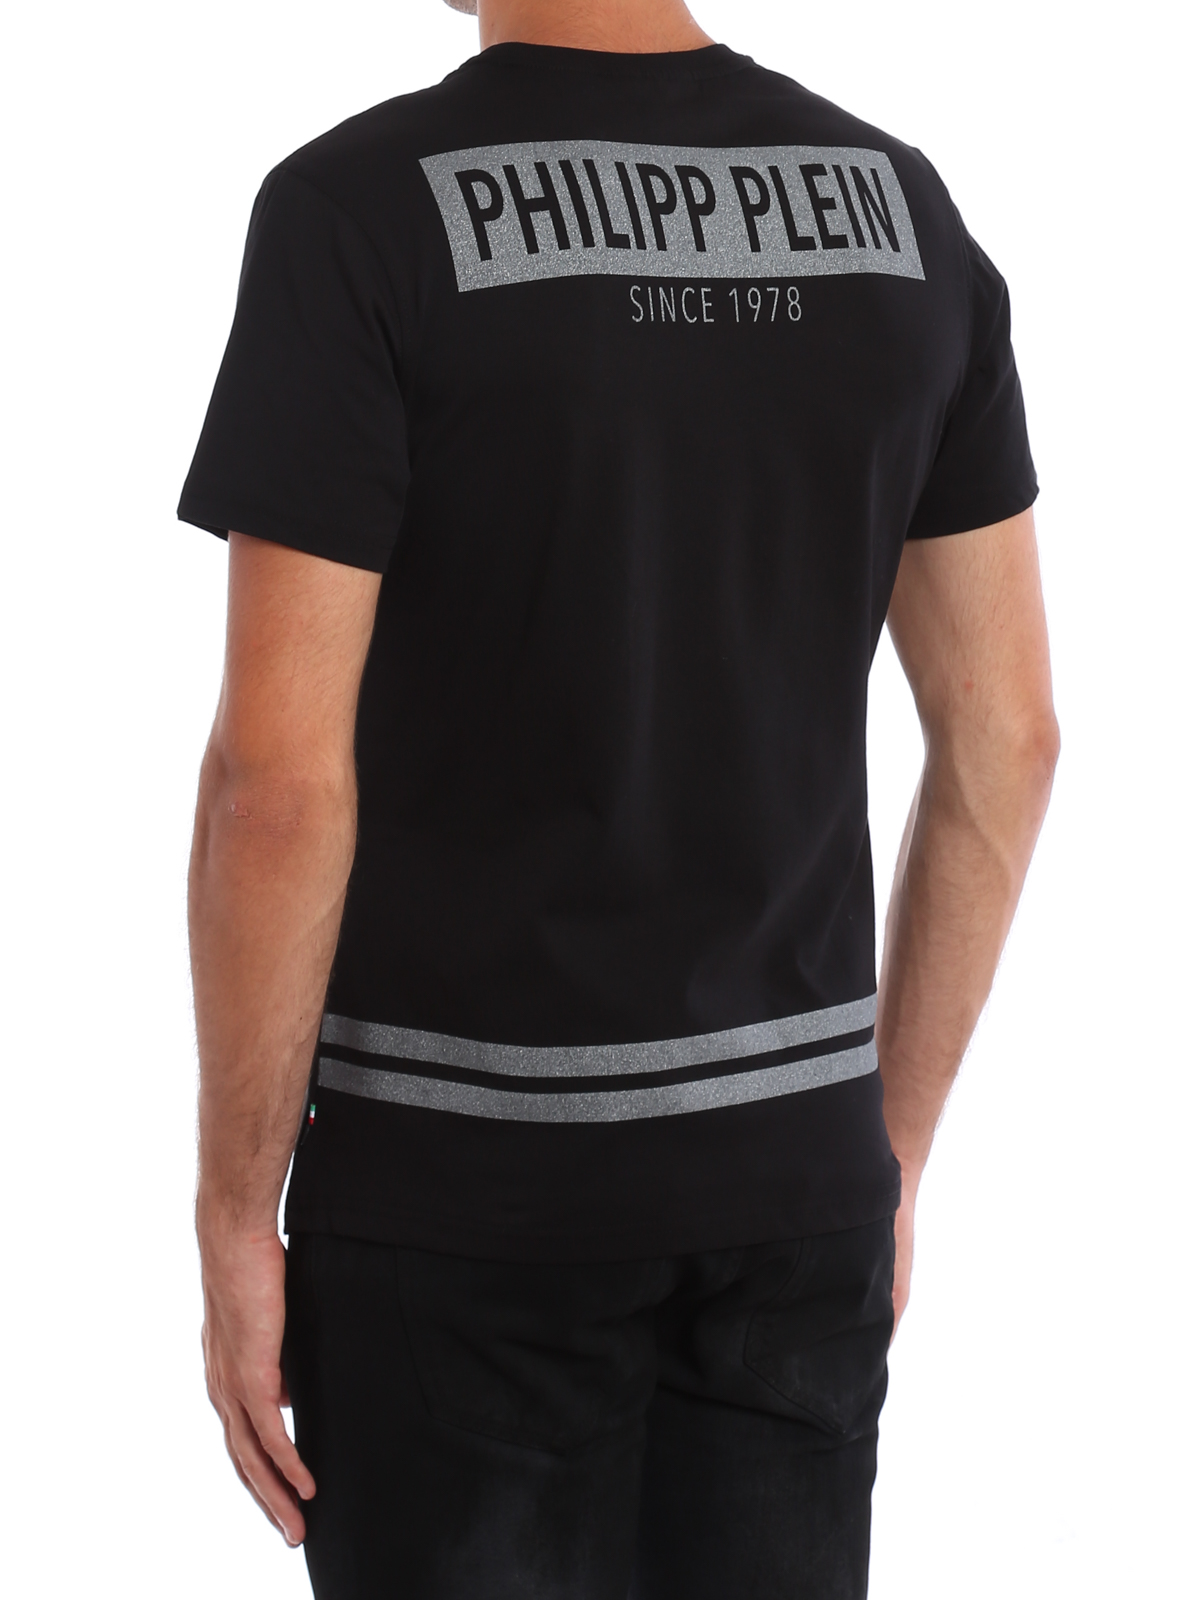 philipp plein glitter shirt